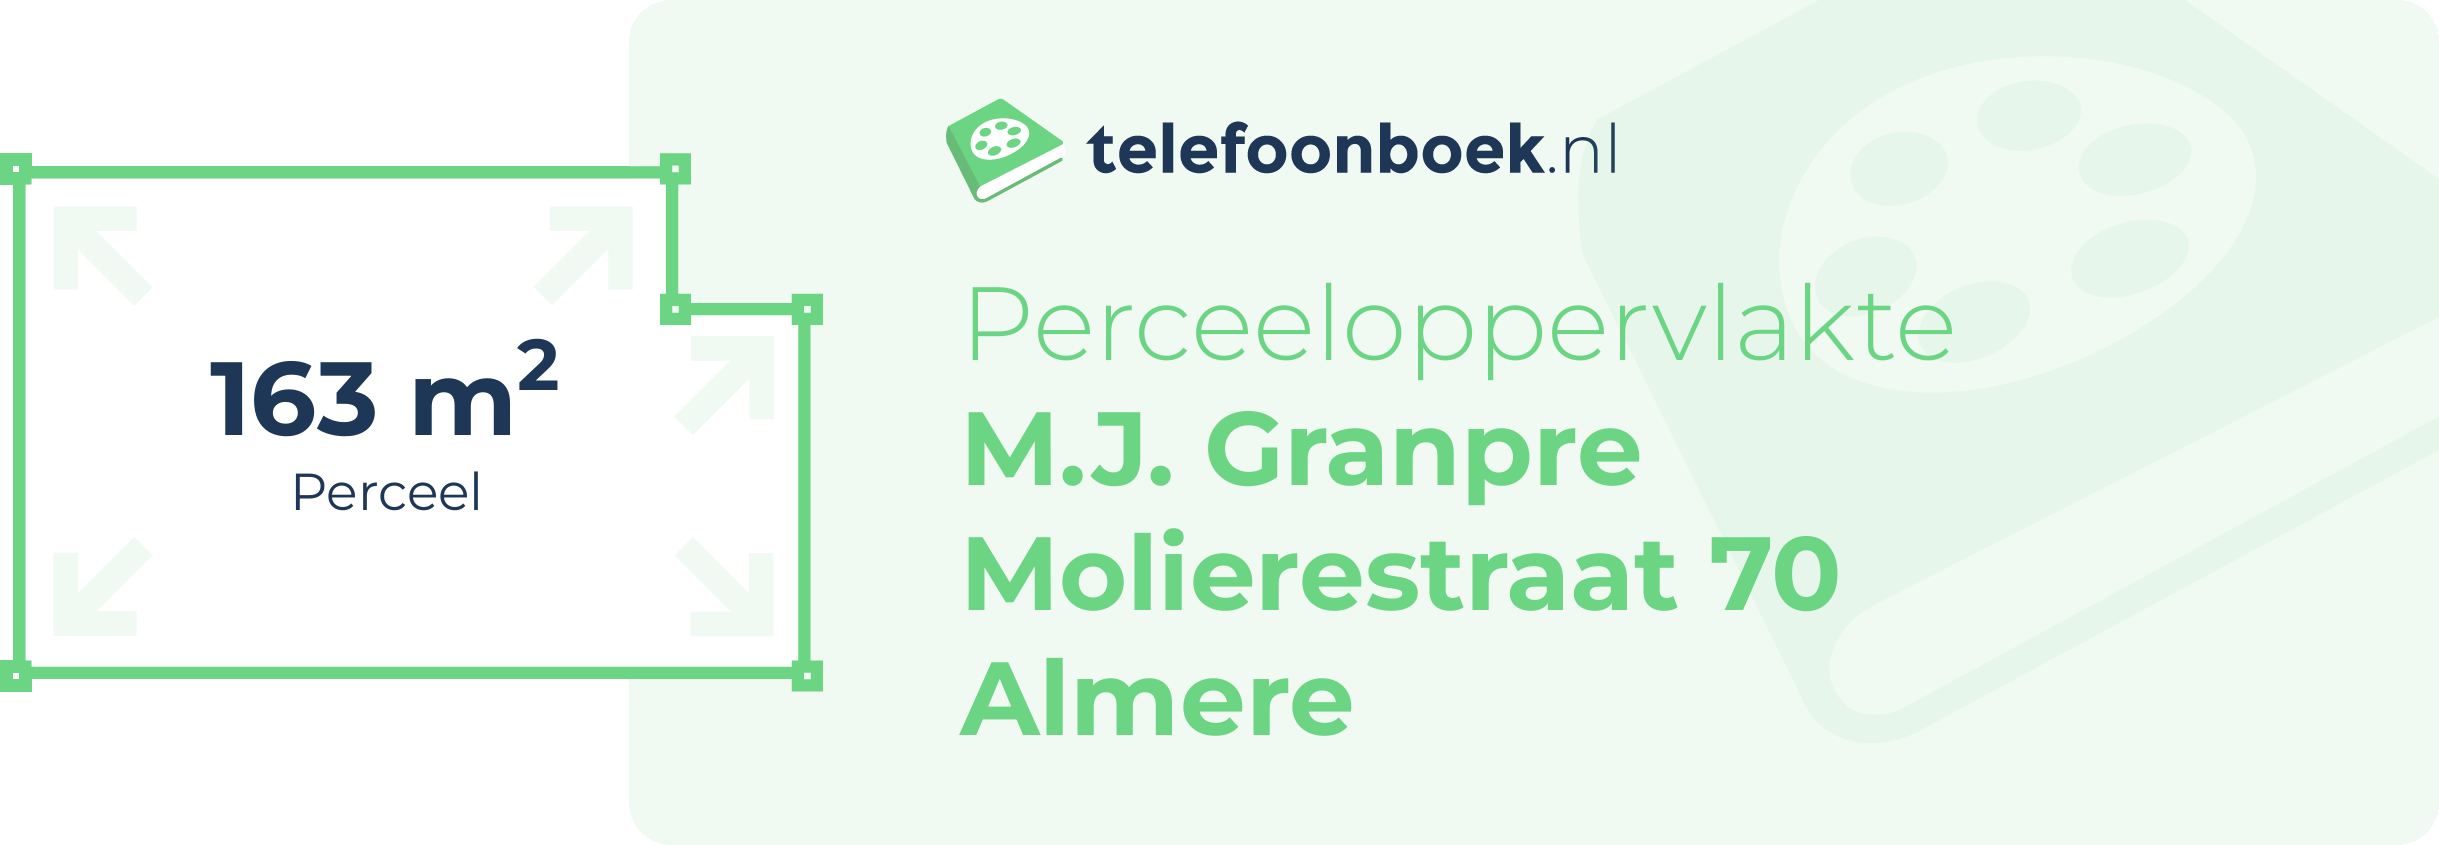 Perceeloppervlakte M.J. Granpre Molierestraat 70 Almere